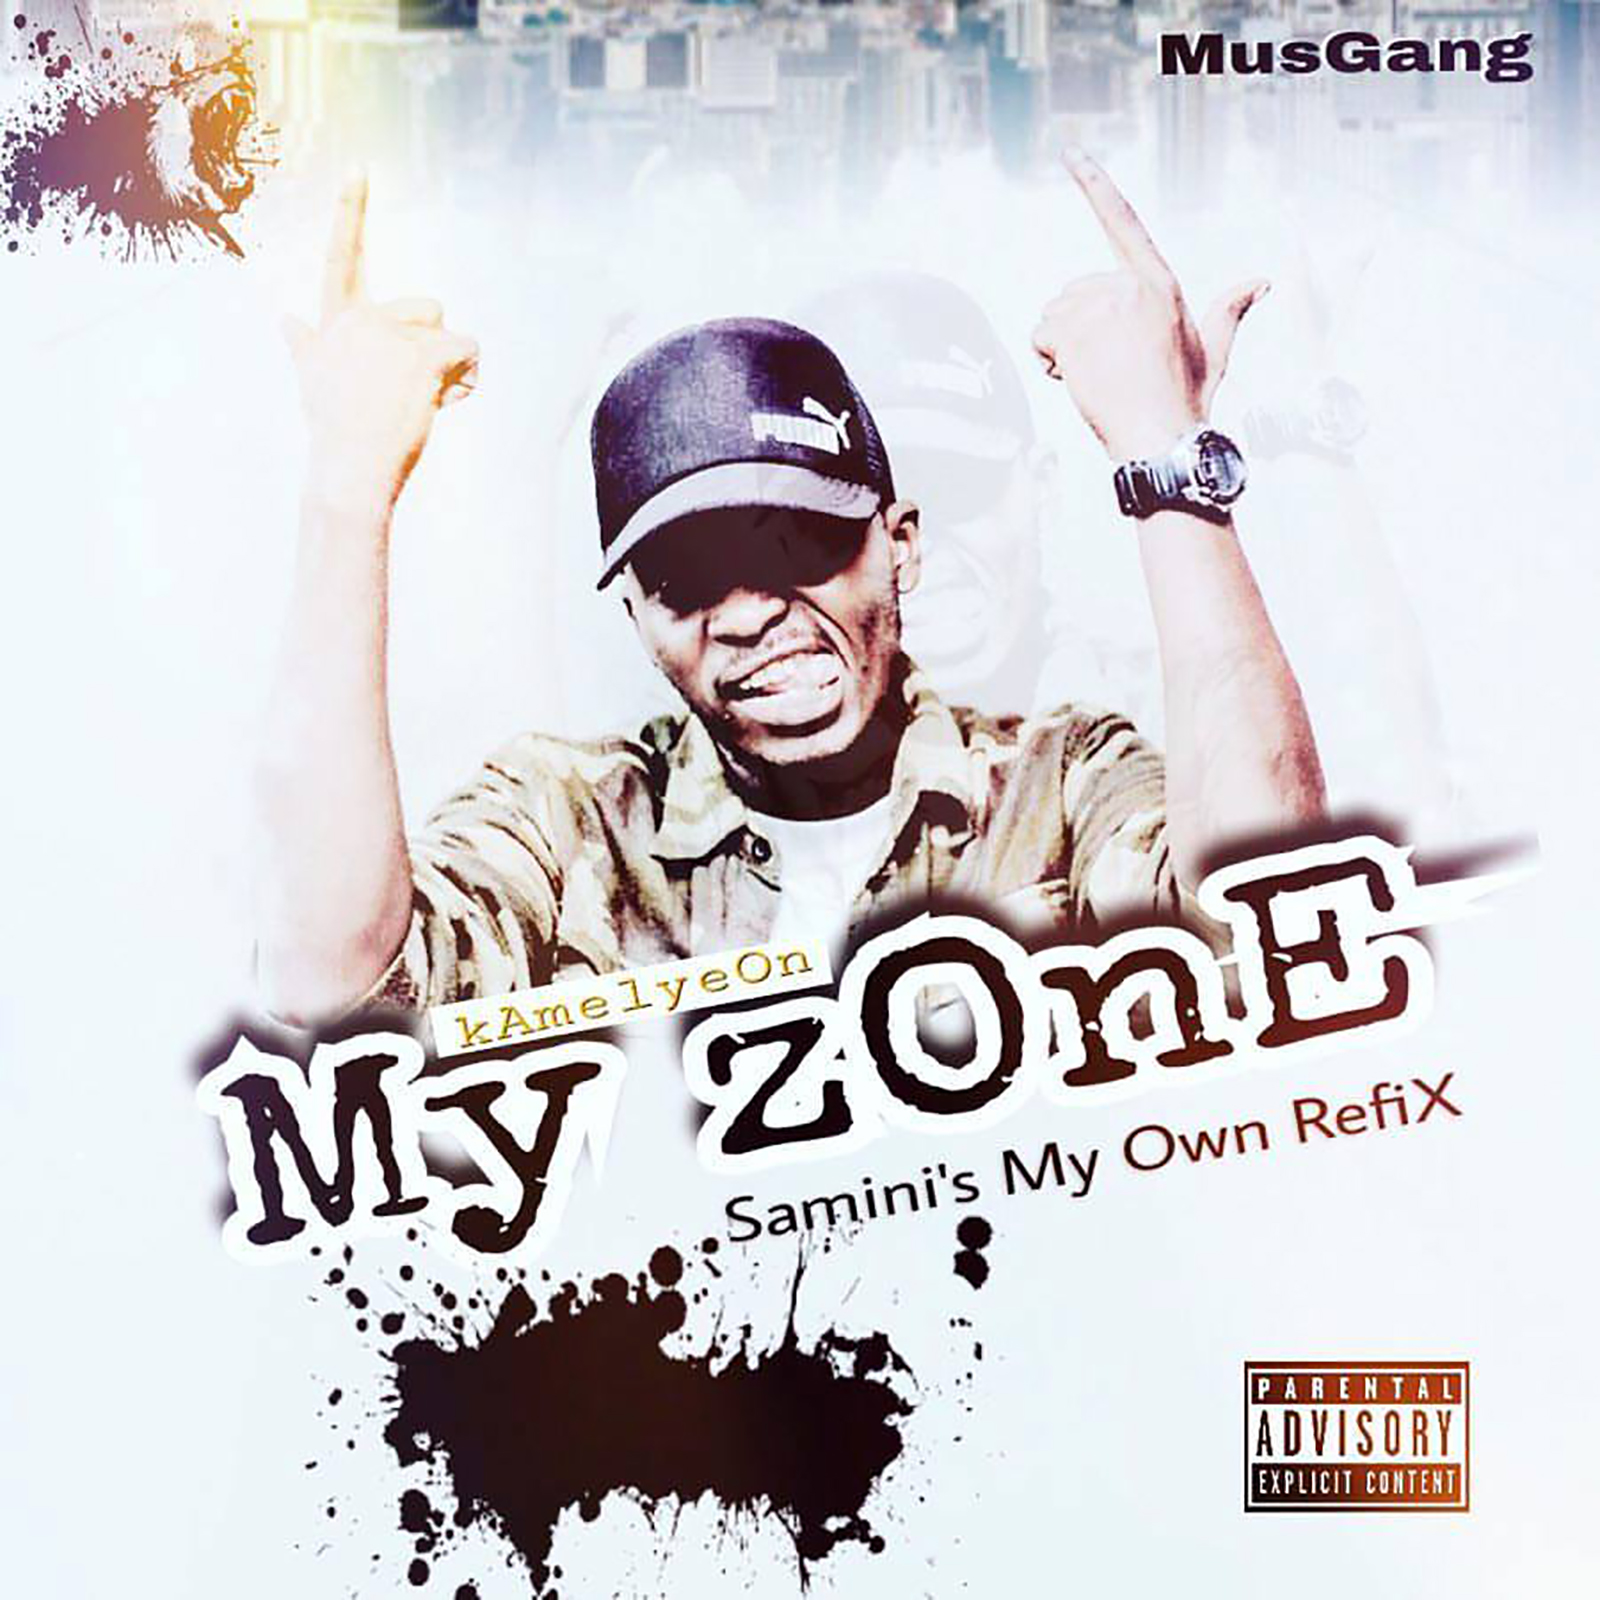 My zOnE (Samini My Own Refix) by Kamelyeon